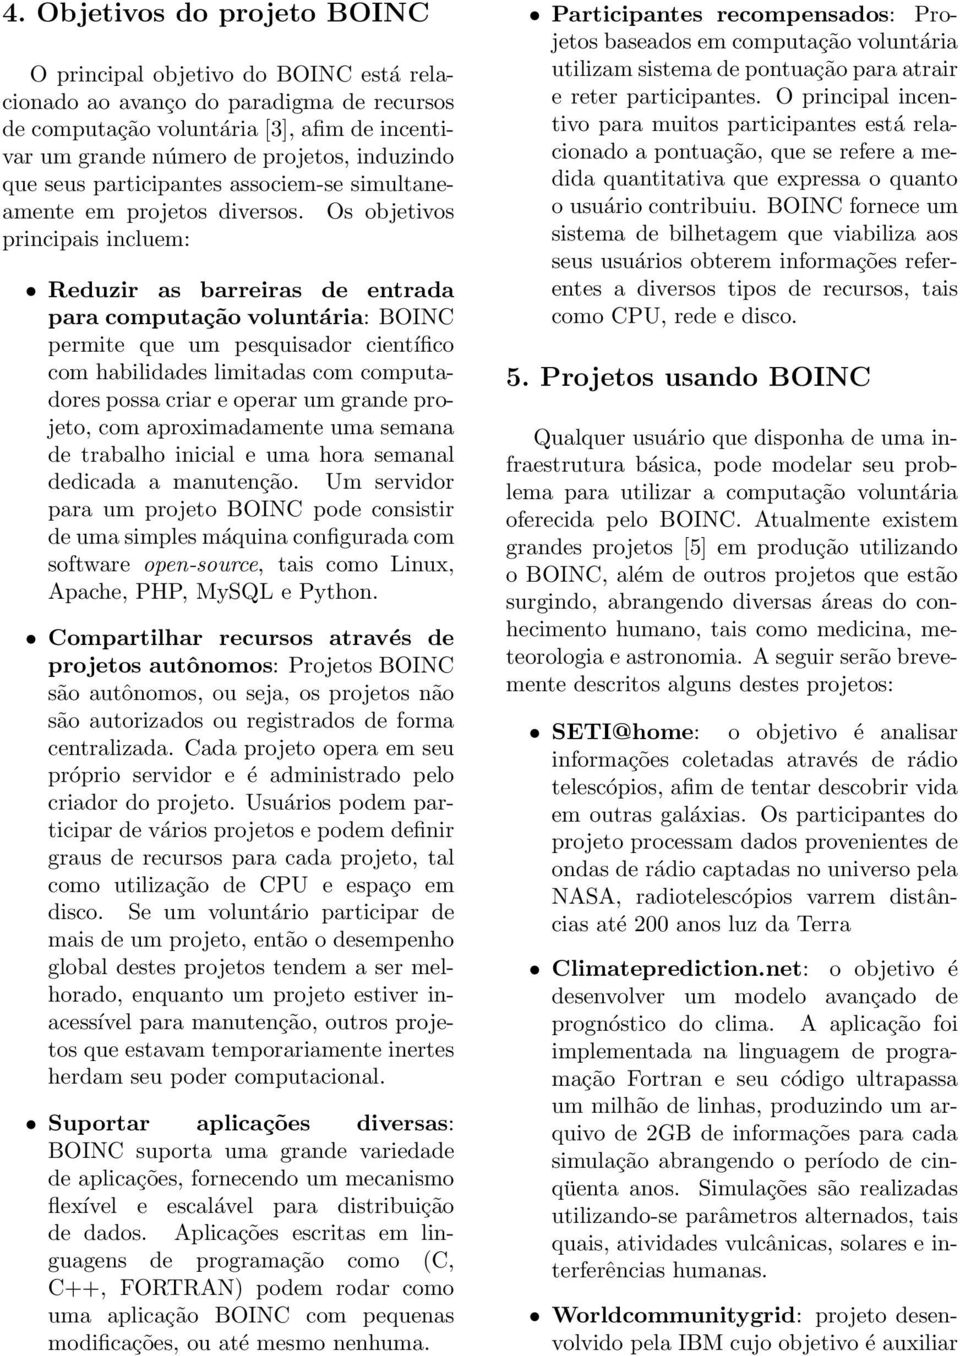 Os objetivos principais incluem: Reduzir as barreiras de entrada para computação voluntária: BOINC permite que um pesquisador científico com habilidades limitadas com computadores possa criar e